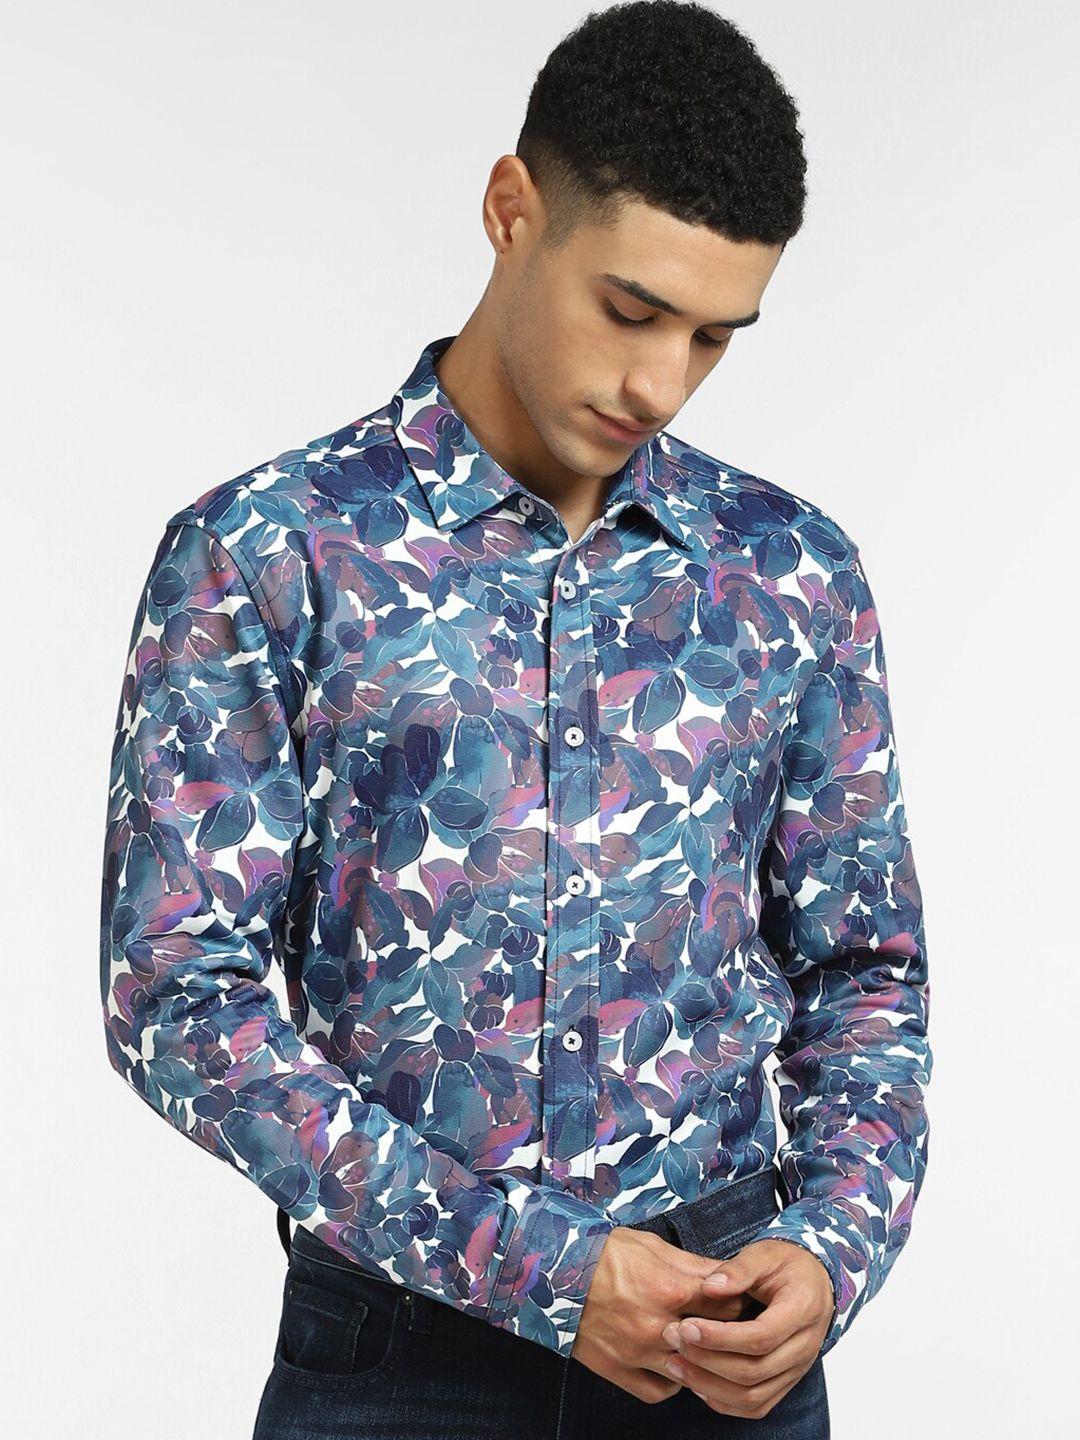 jack & jones men blue & purple floral printed cotton casual shirt